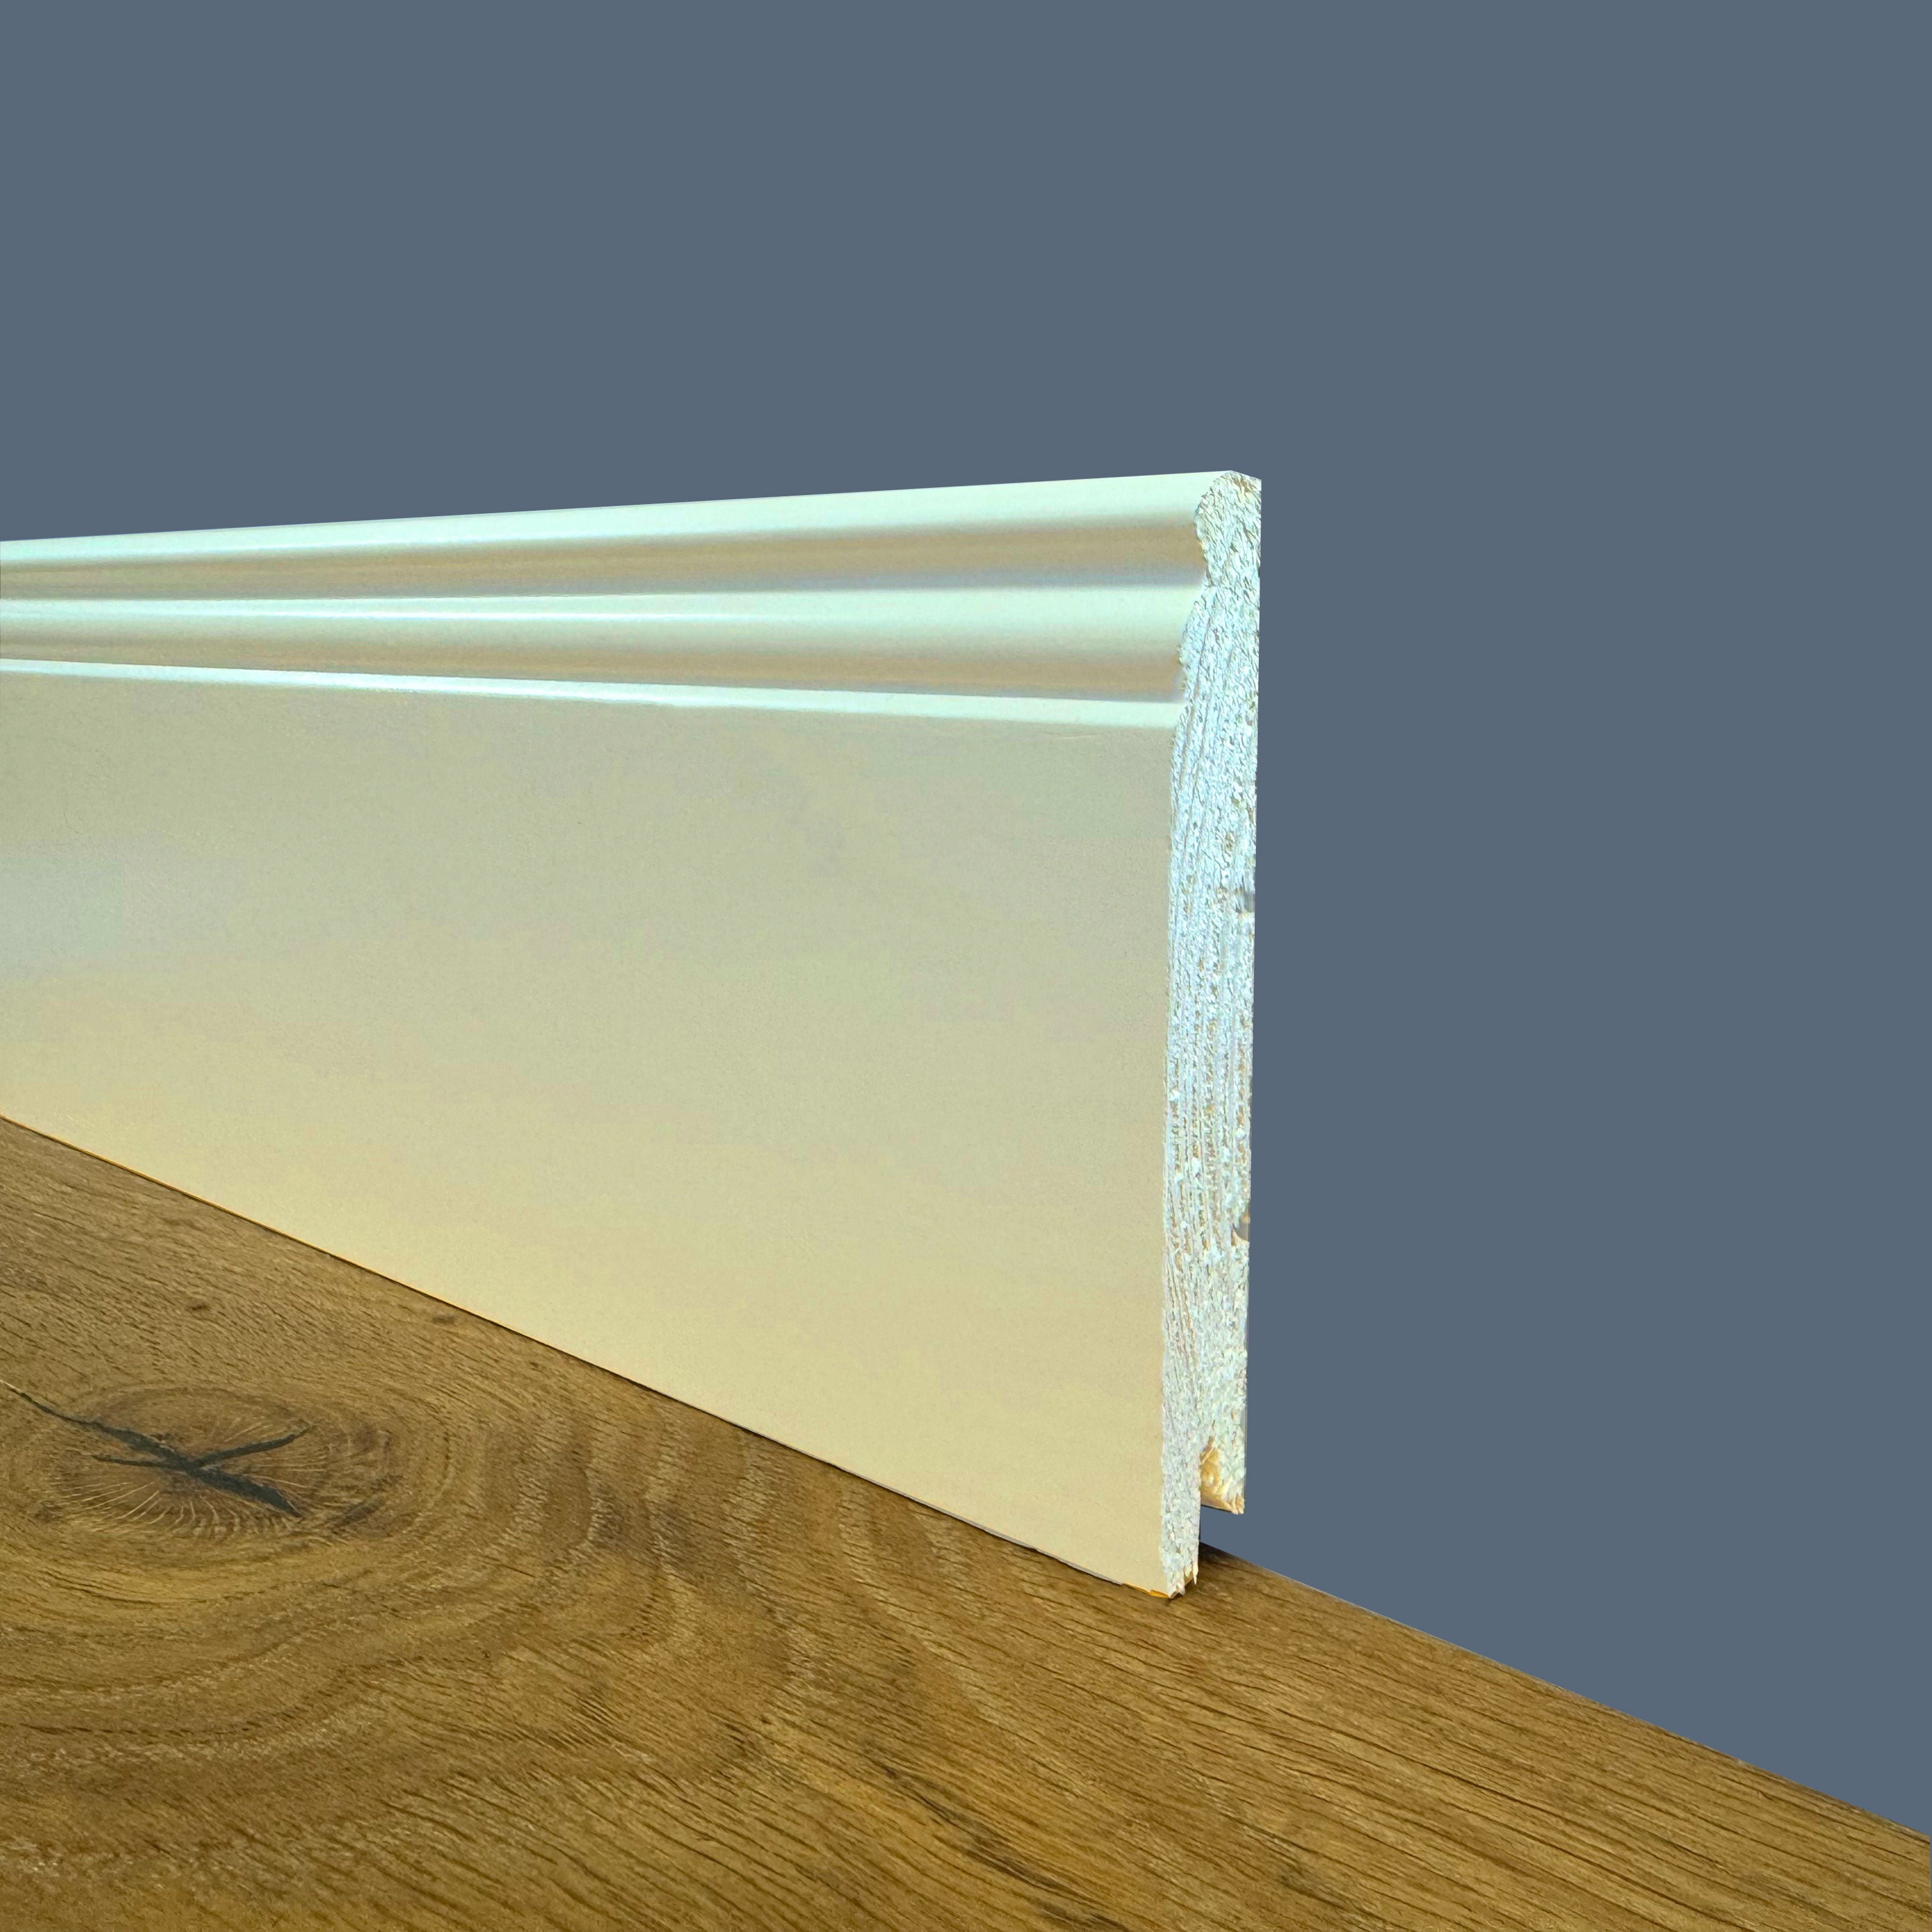 100 ml PREMIUM-Sockelleiste aus MASSIVEM Holz, Mod. DUCALE 120x15, lackiert in Weiß RAL 9010 (Elfenbein).